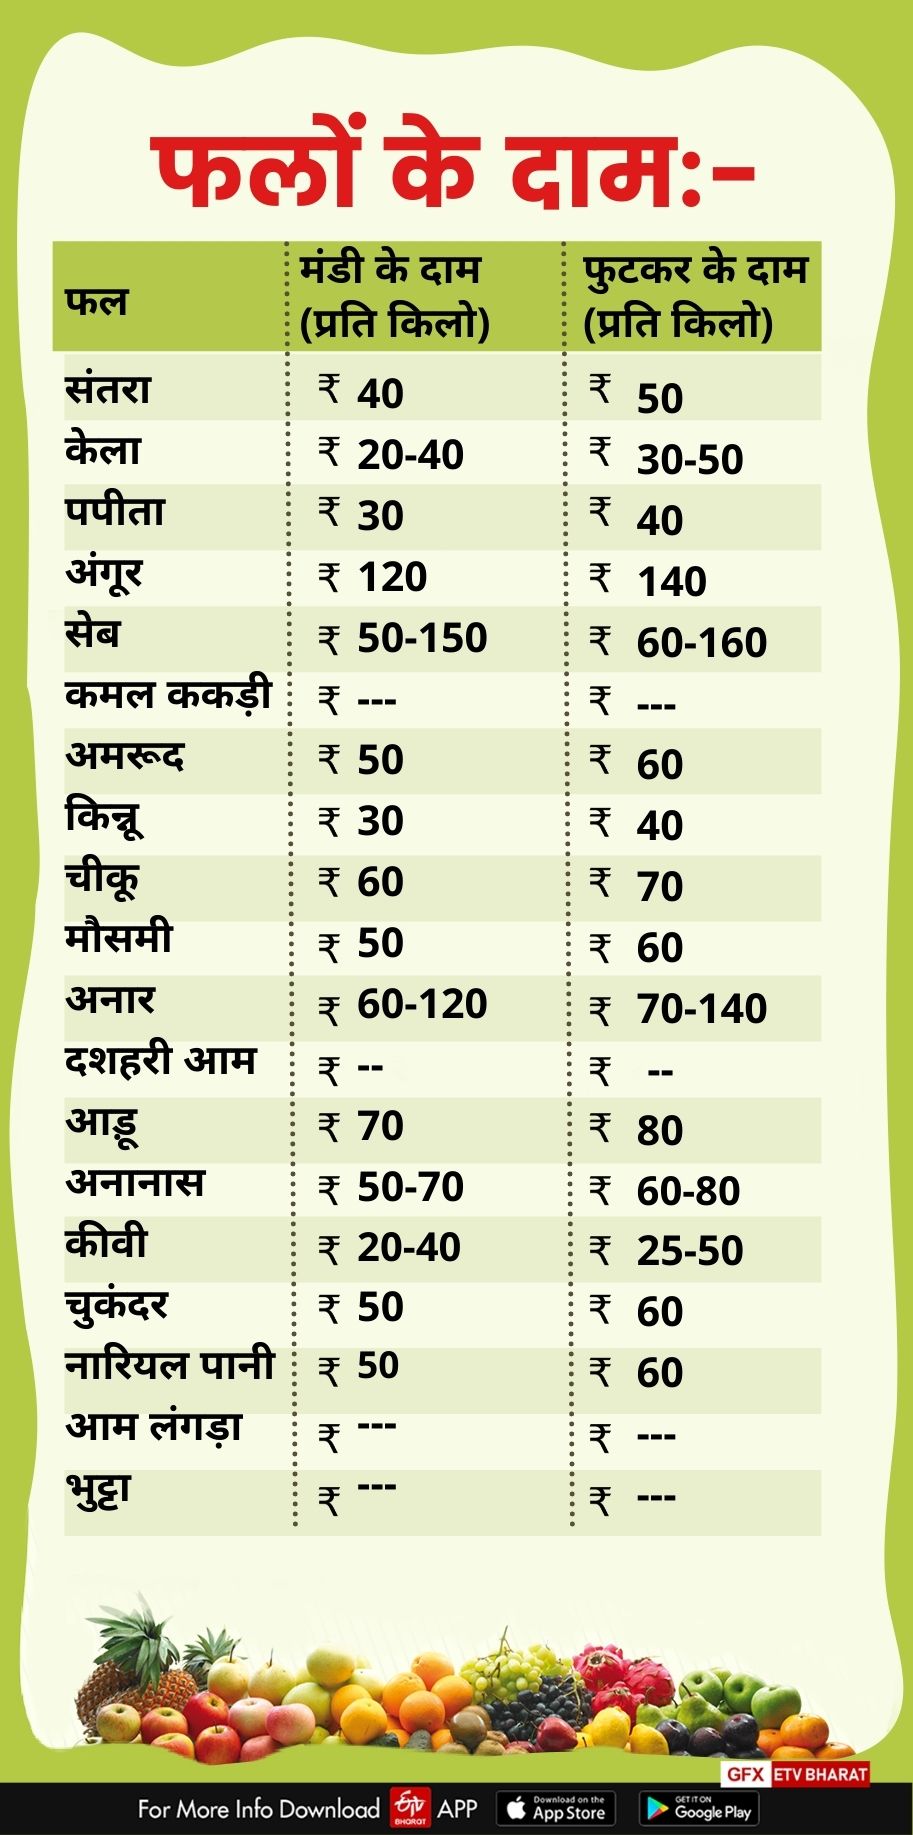 Vegetables prices in dehradun mandi